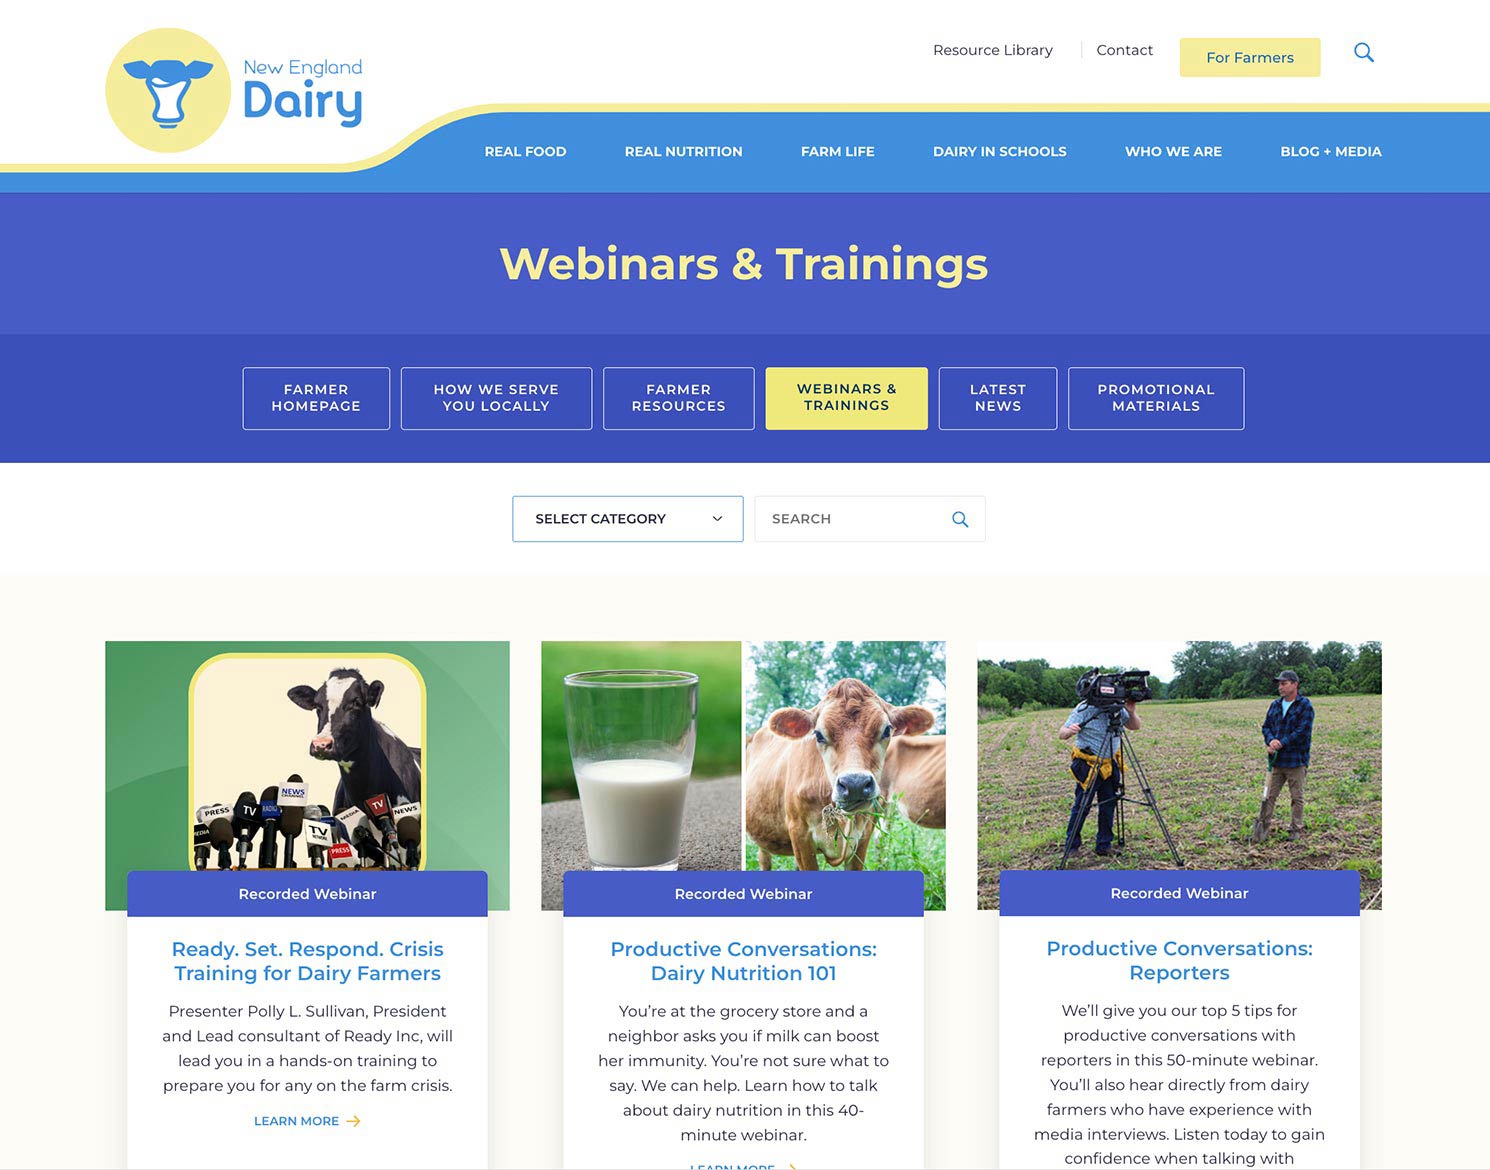 New England Dairy website design